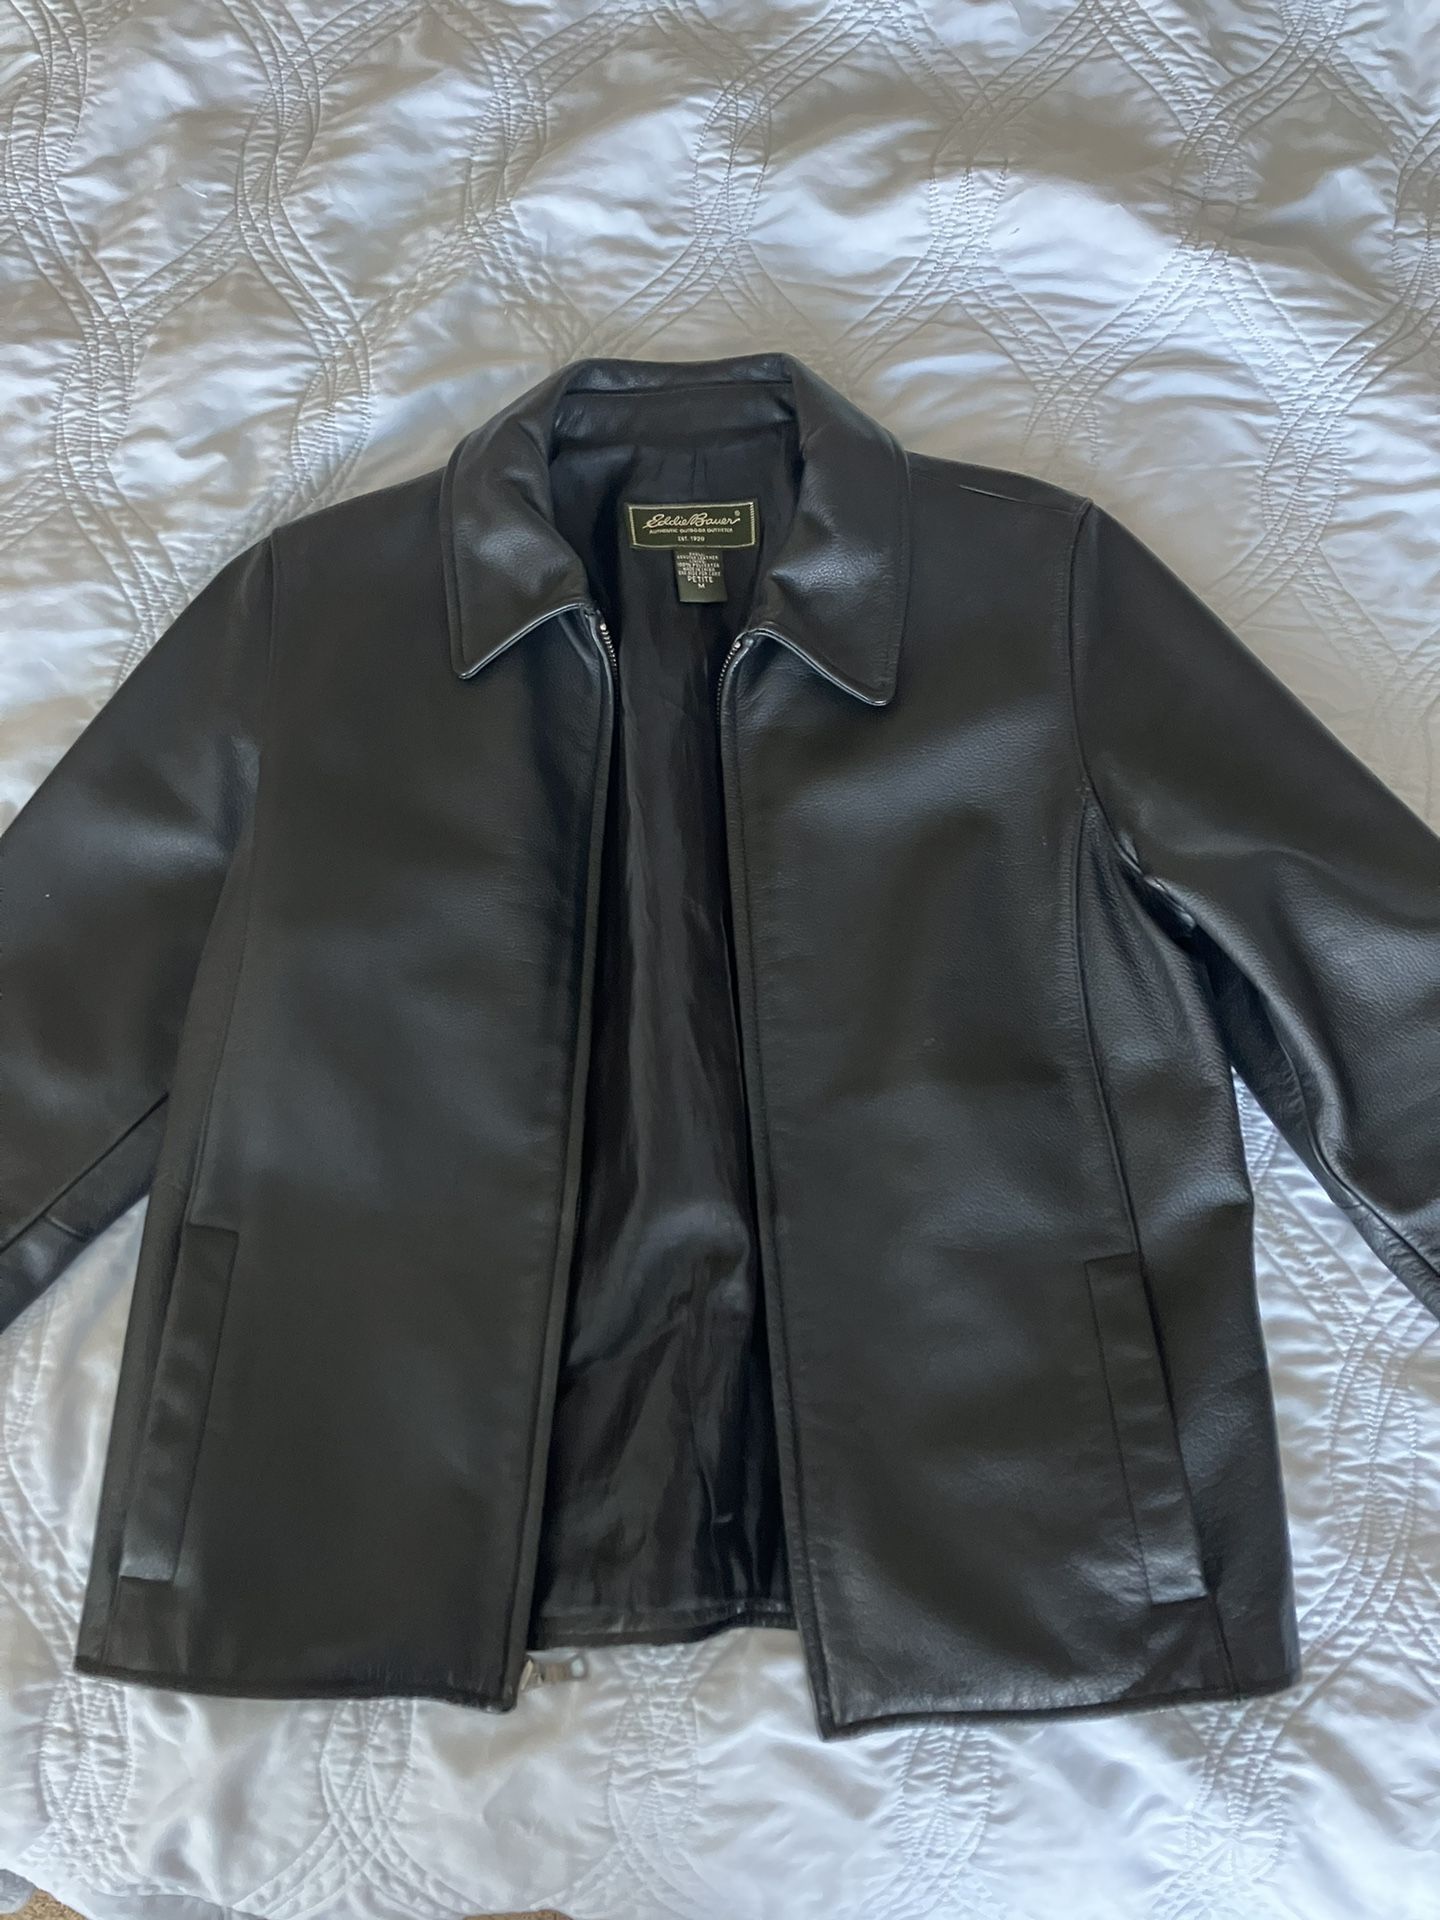 Women’s Eddie Bauer Leather Jacket